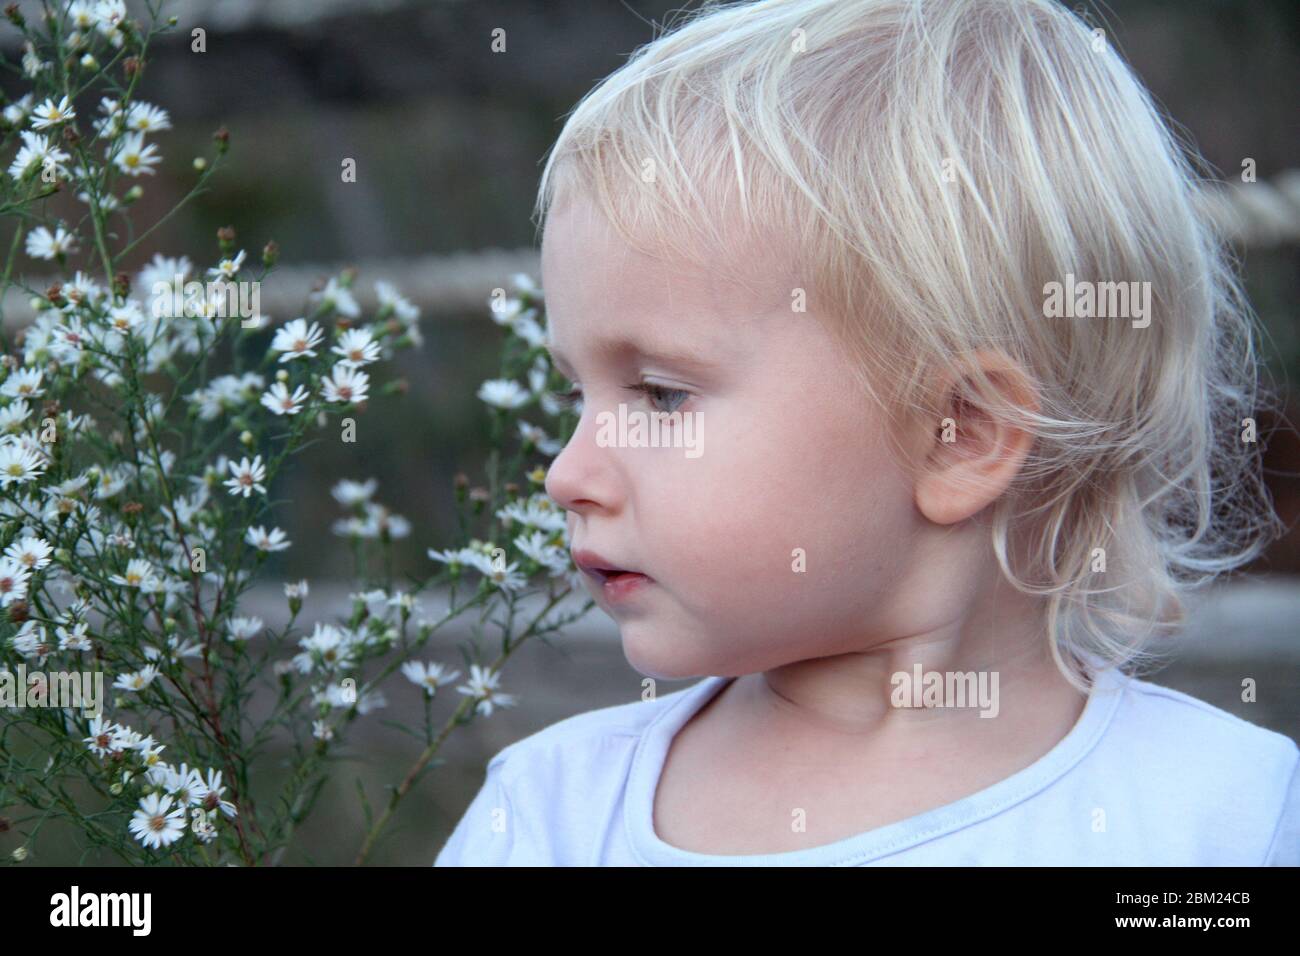 Portrait de petite fille blonde mignonne près de fleurs blanches Banque D'Images